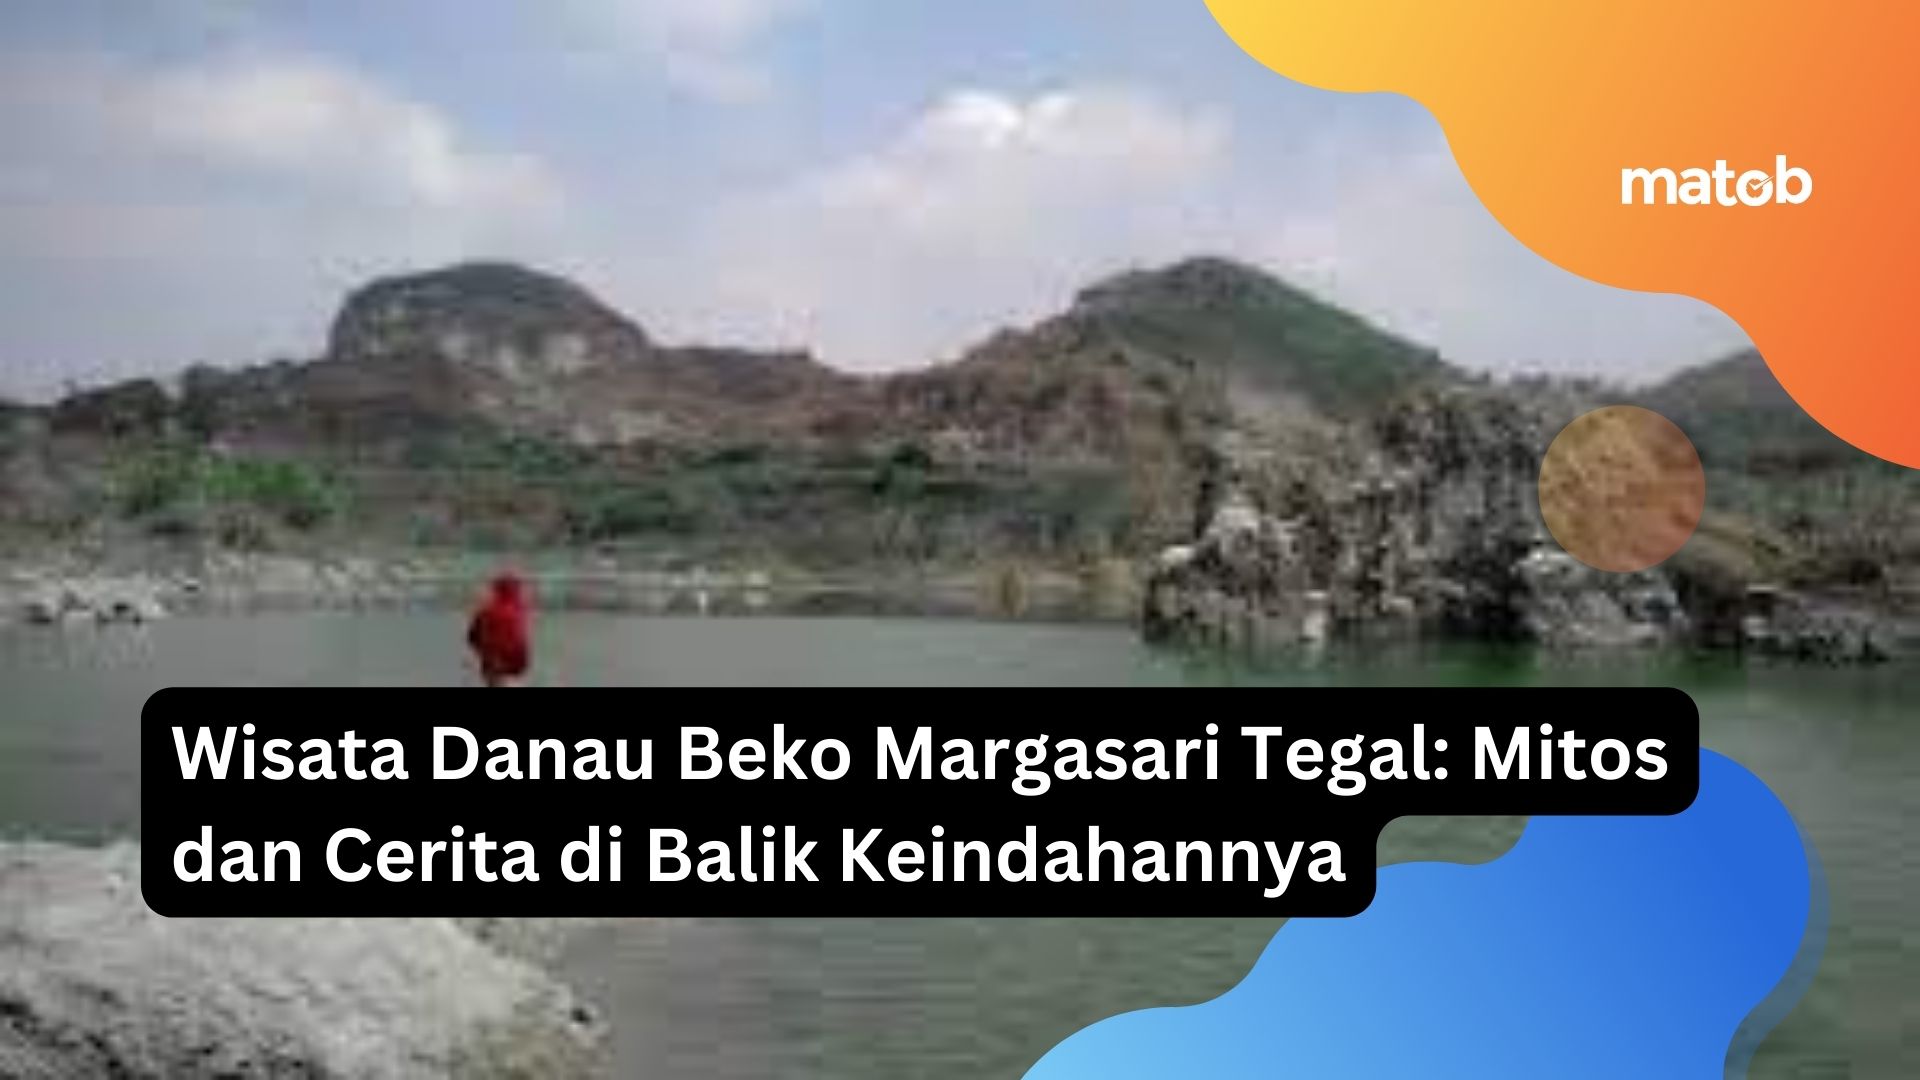 Wisata Danau Beko Margasari Tegal: Mitos dan Cerita di Balik Keindahannya